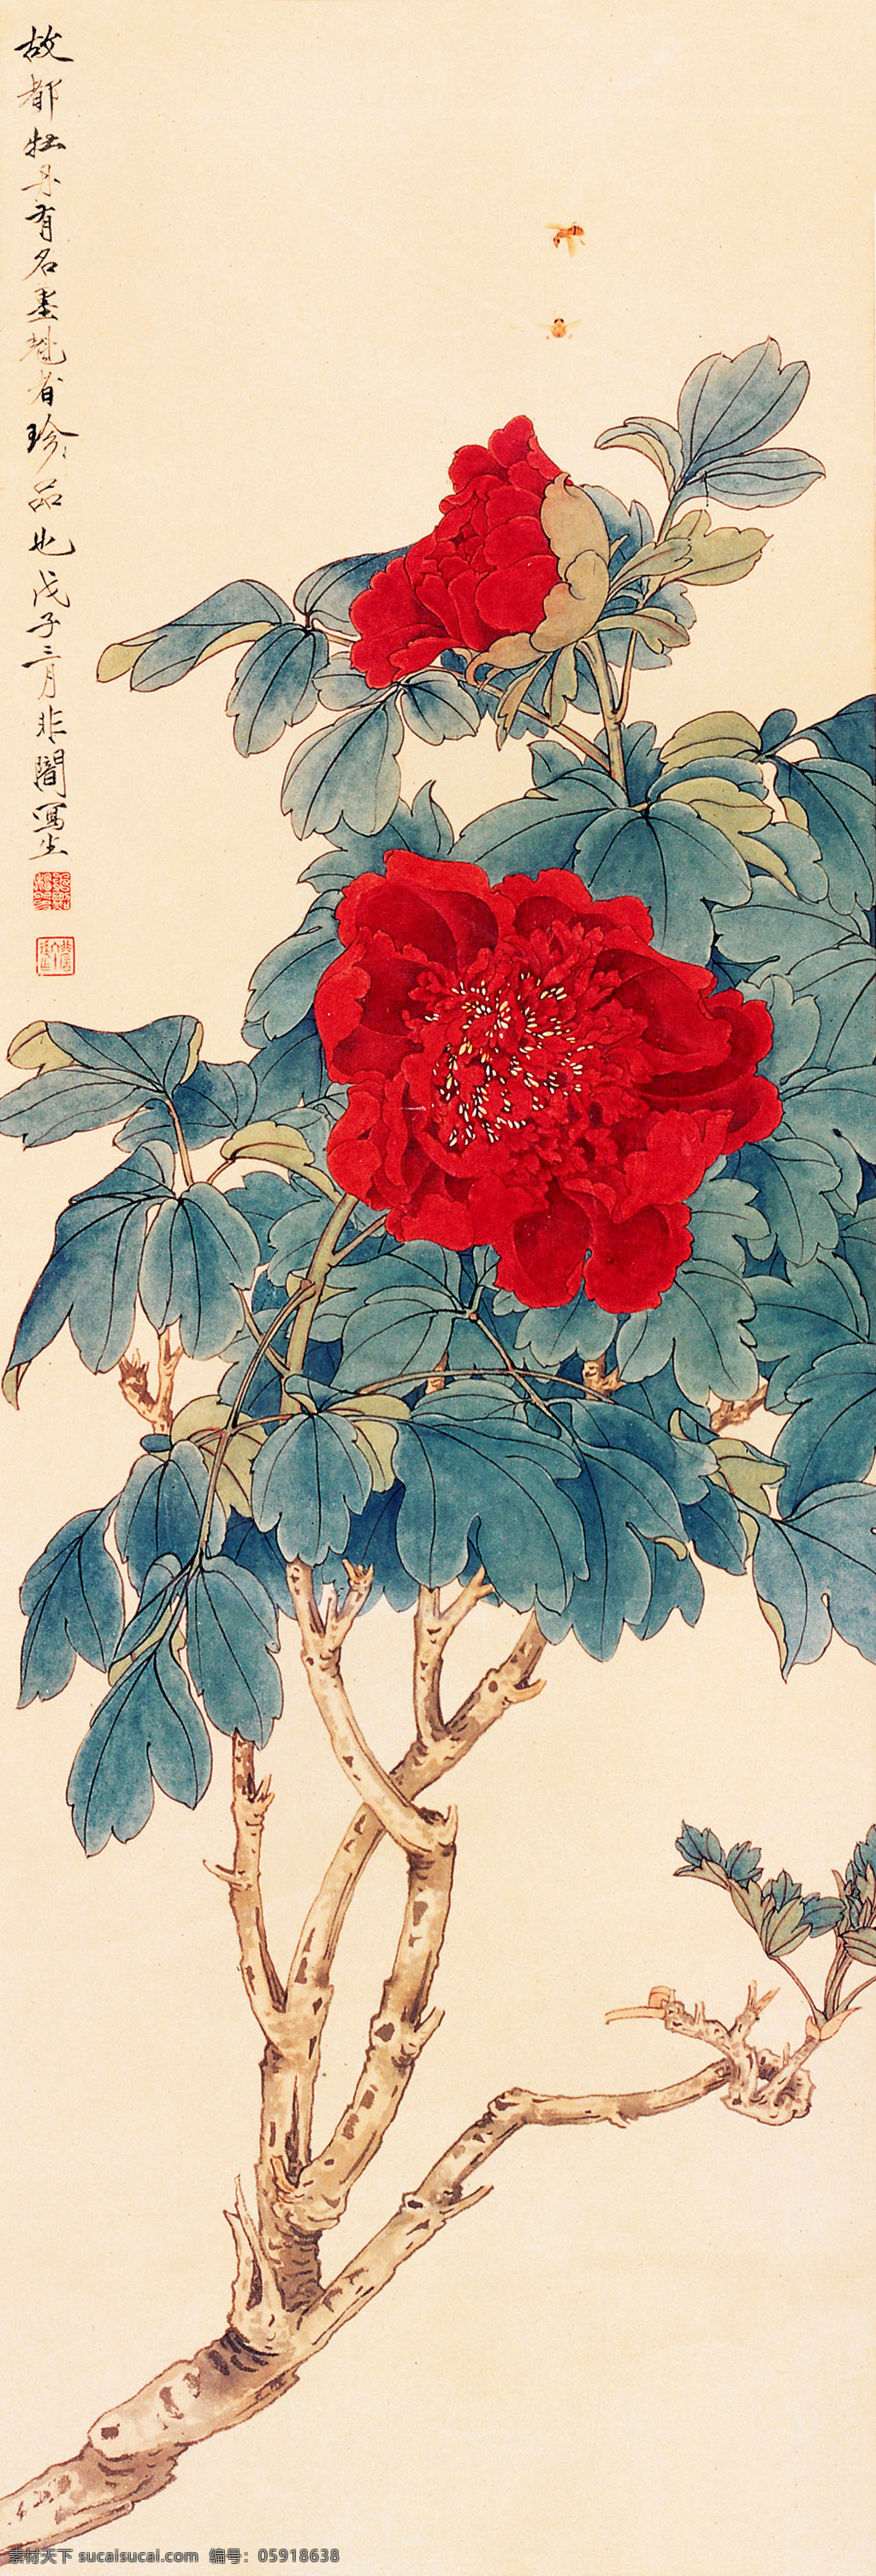 牡丹 蜜蜂 国画 中国画 绘画艺术 装饰画 书画文字 文化艺术